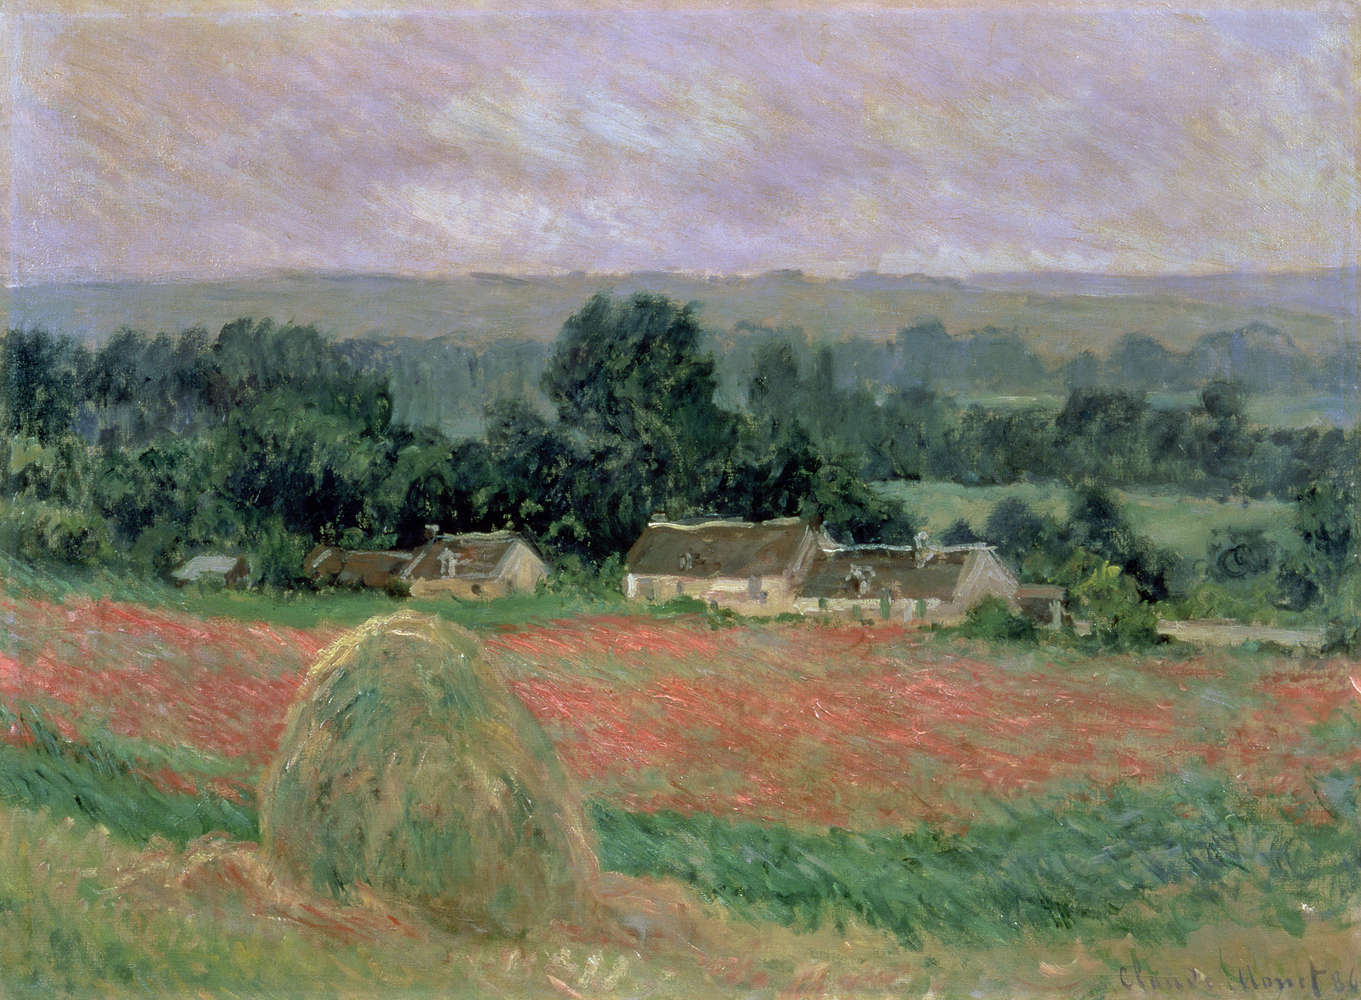             Mural "Pajar en Giverny" de Claude Monet
        